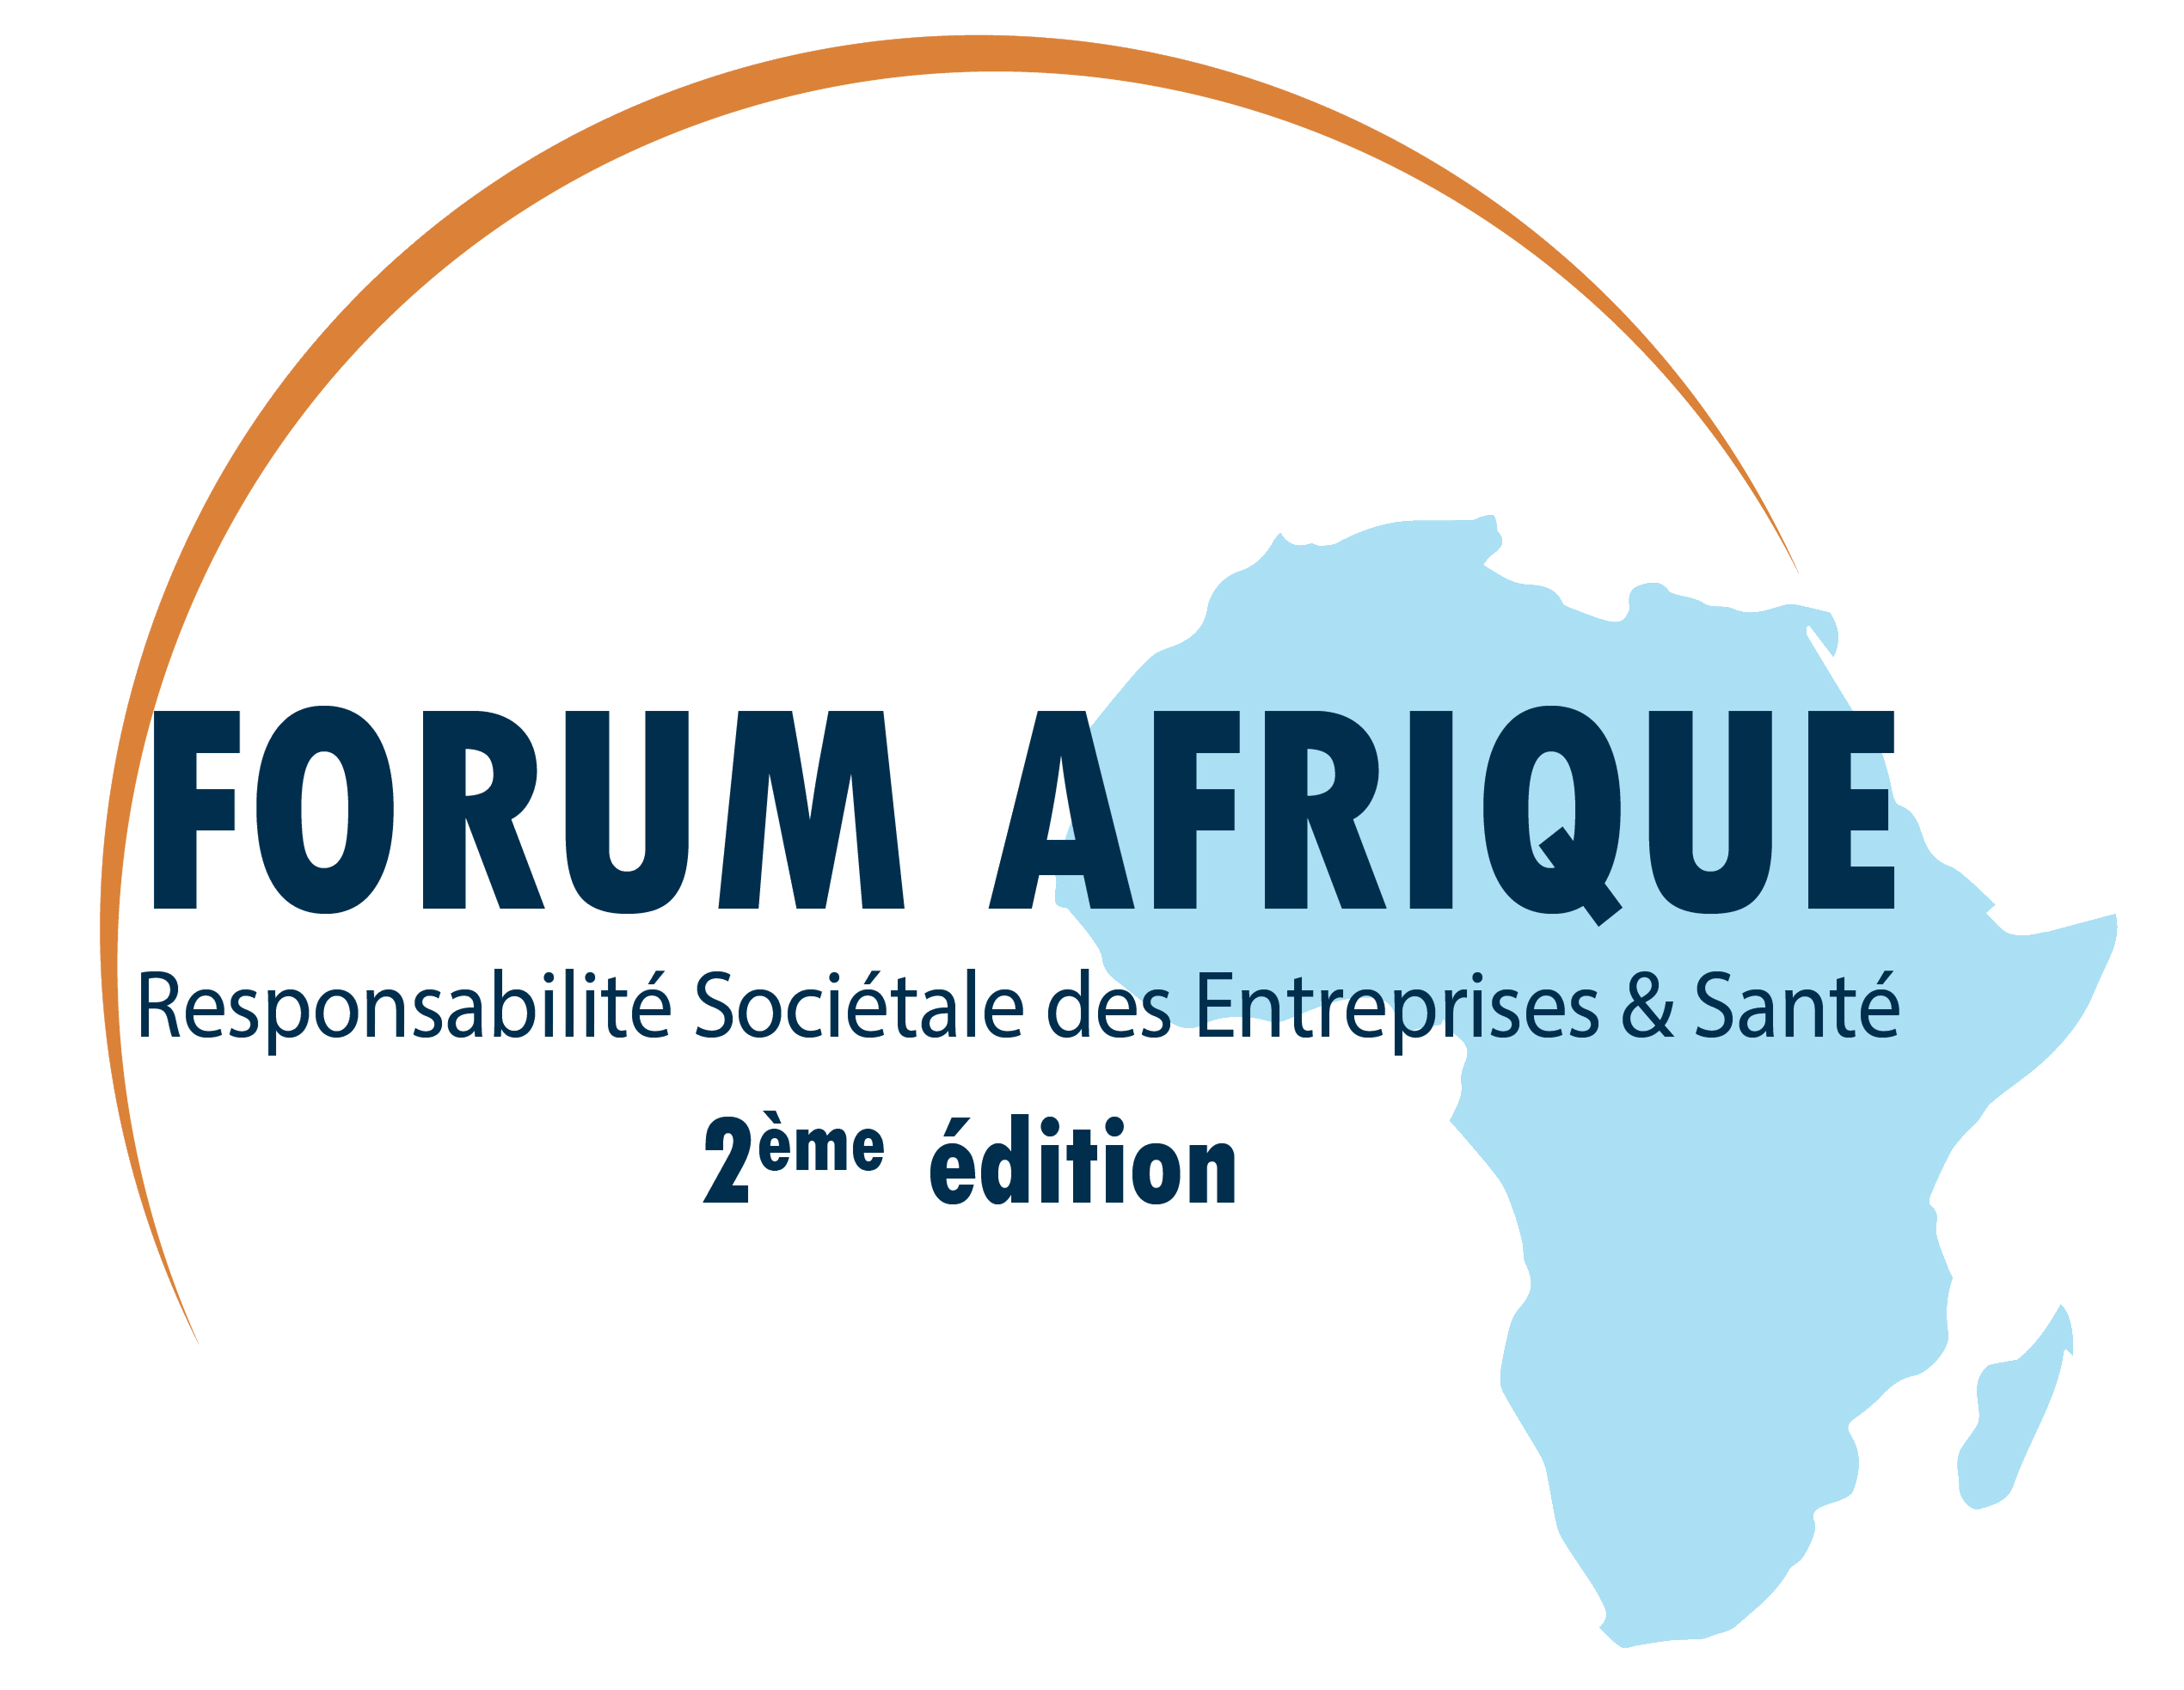 Forum Afrique RSE